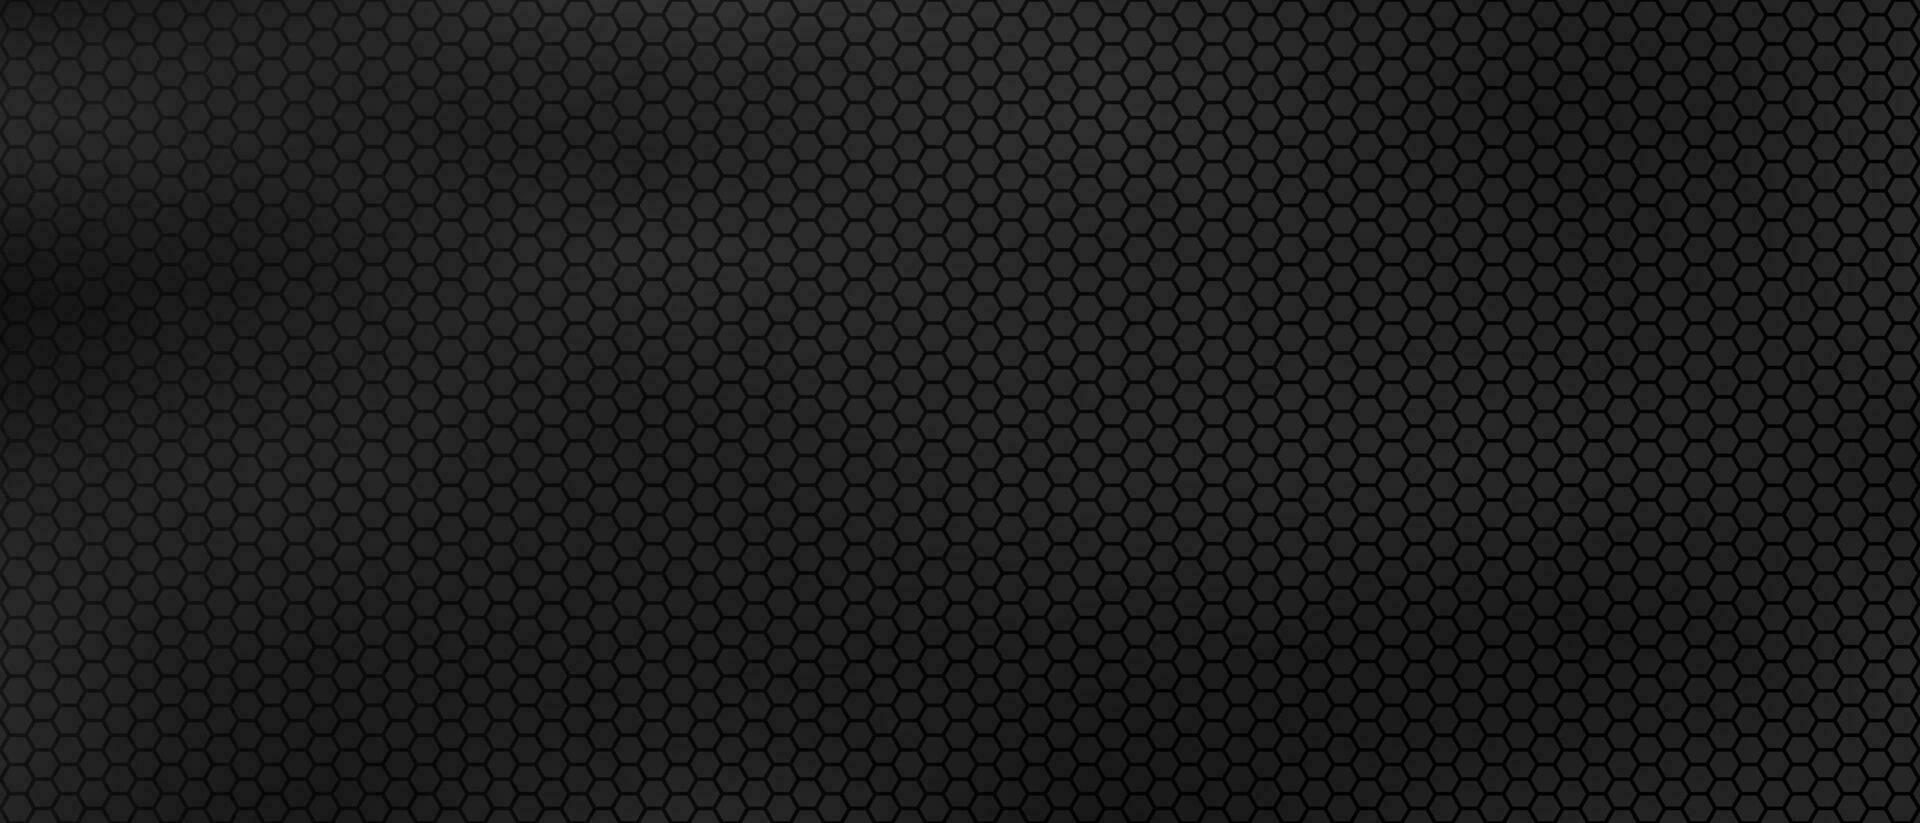 dunkel Hexagon Metall Hintergrund abstrakt Vektor schwarz Hintergrund